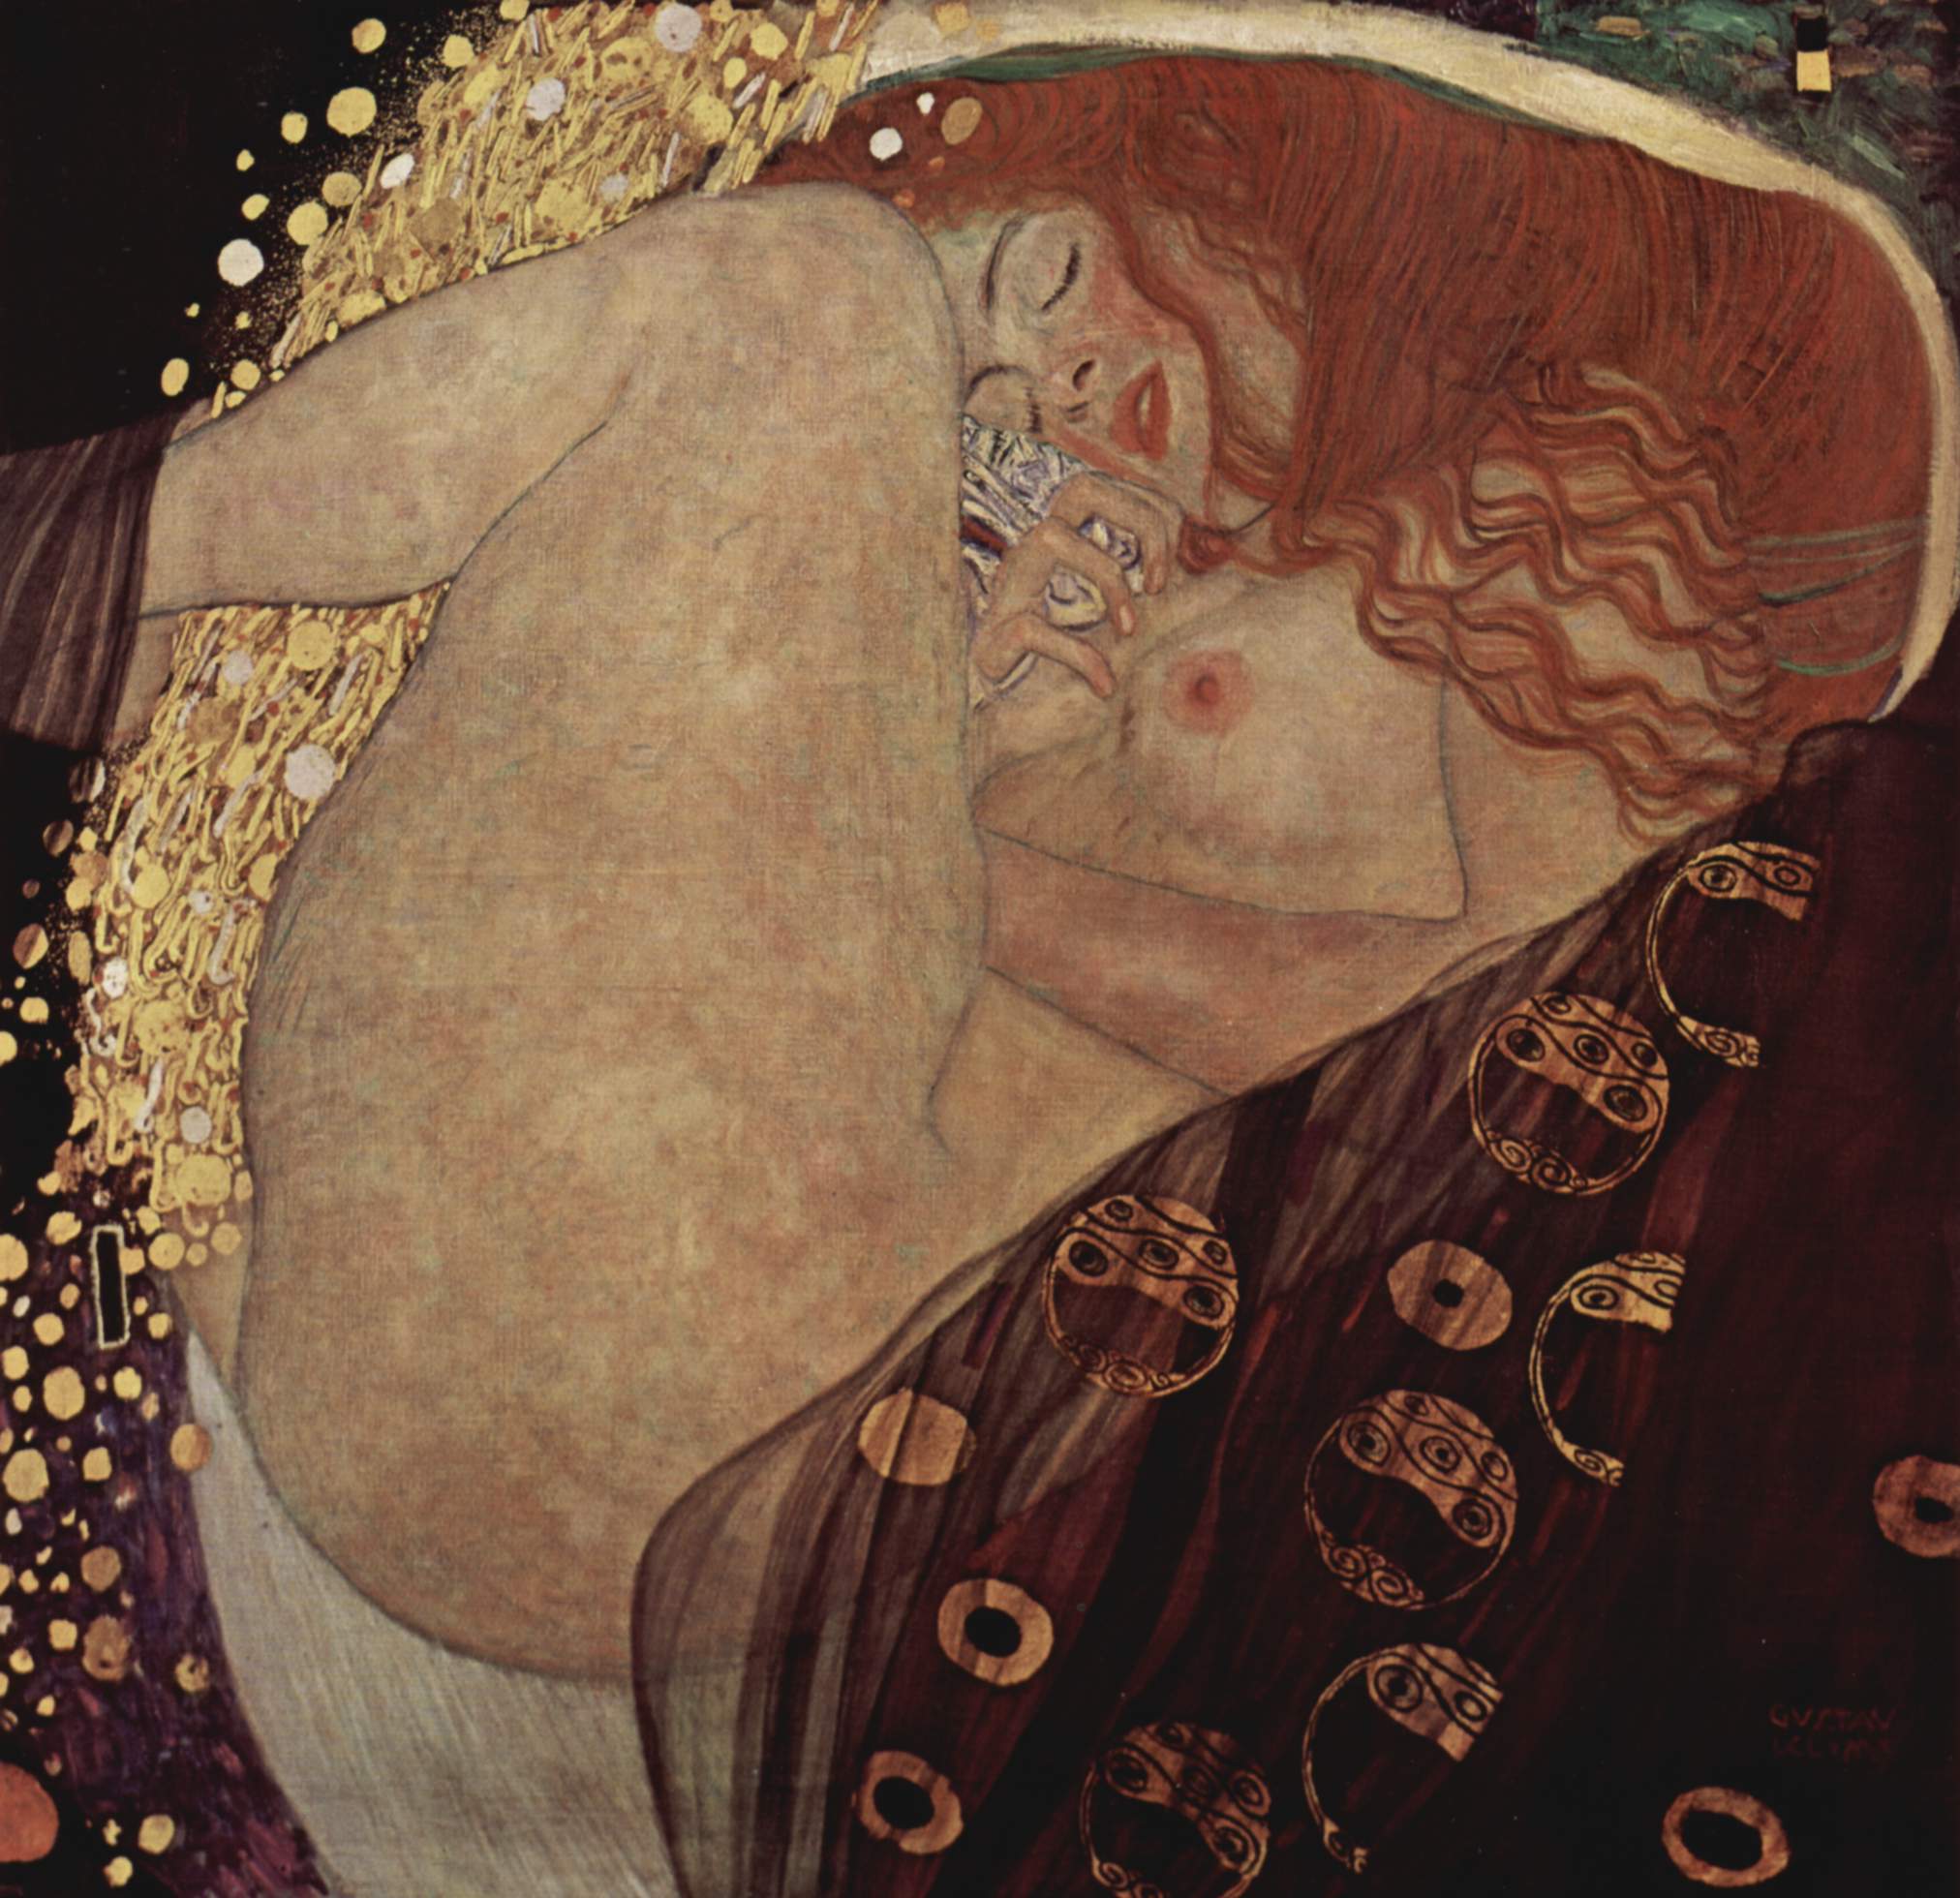 Danae by Gustav Klimt - 1908 - 77 cm x 83 cm Private Sammlung